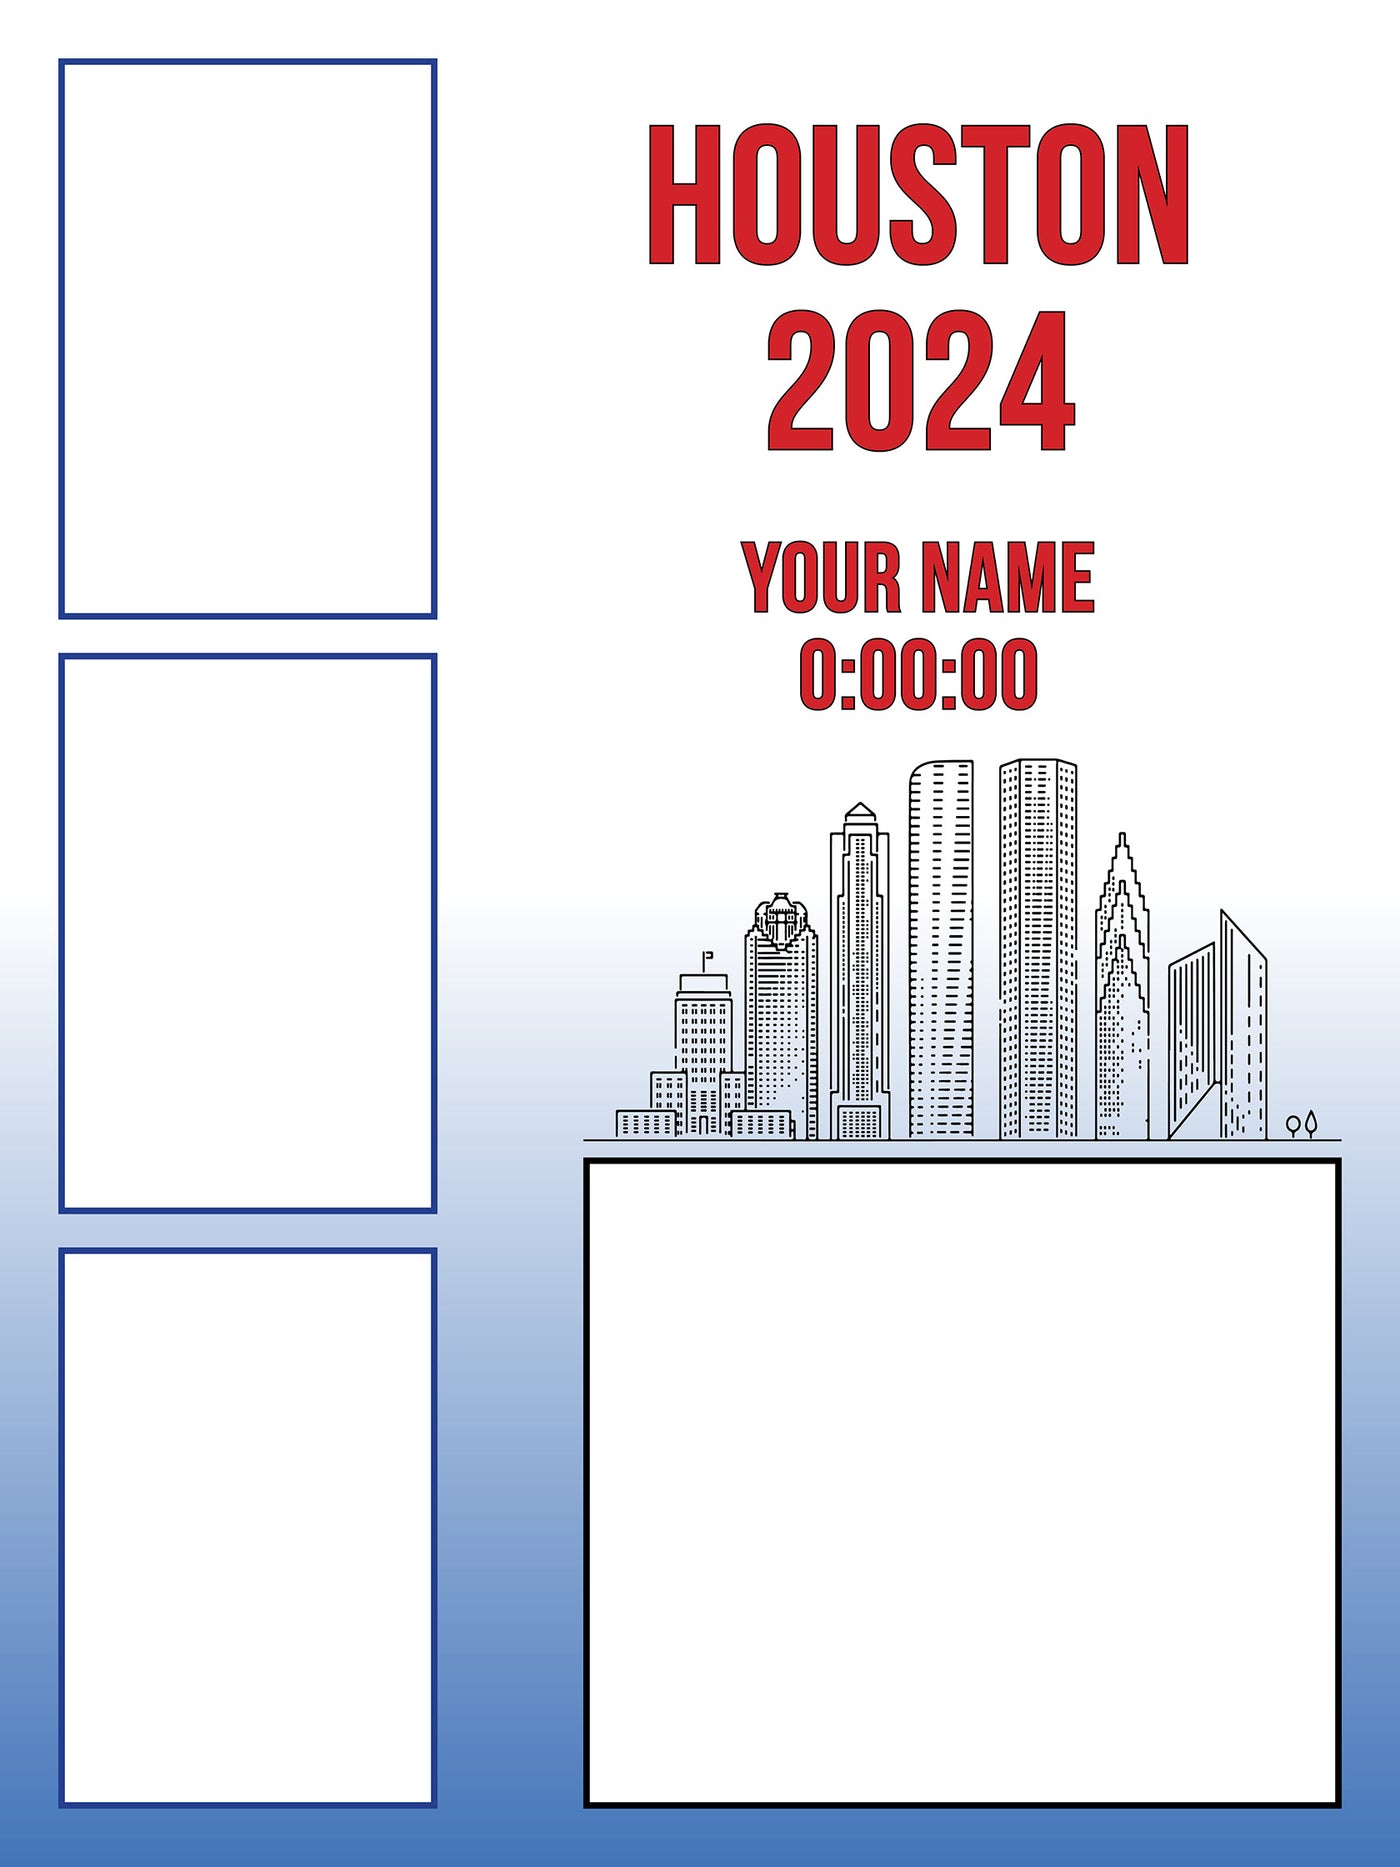 Houston 2024